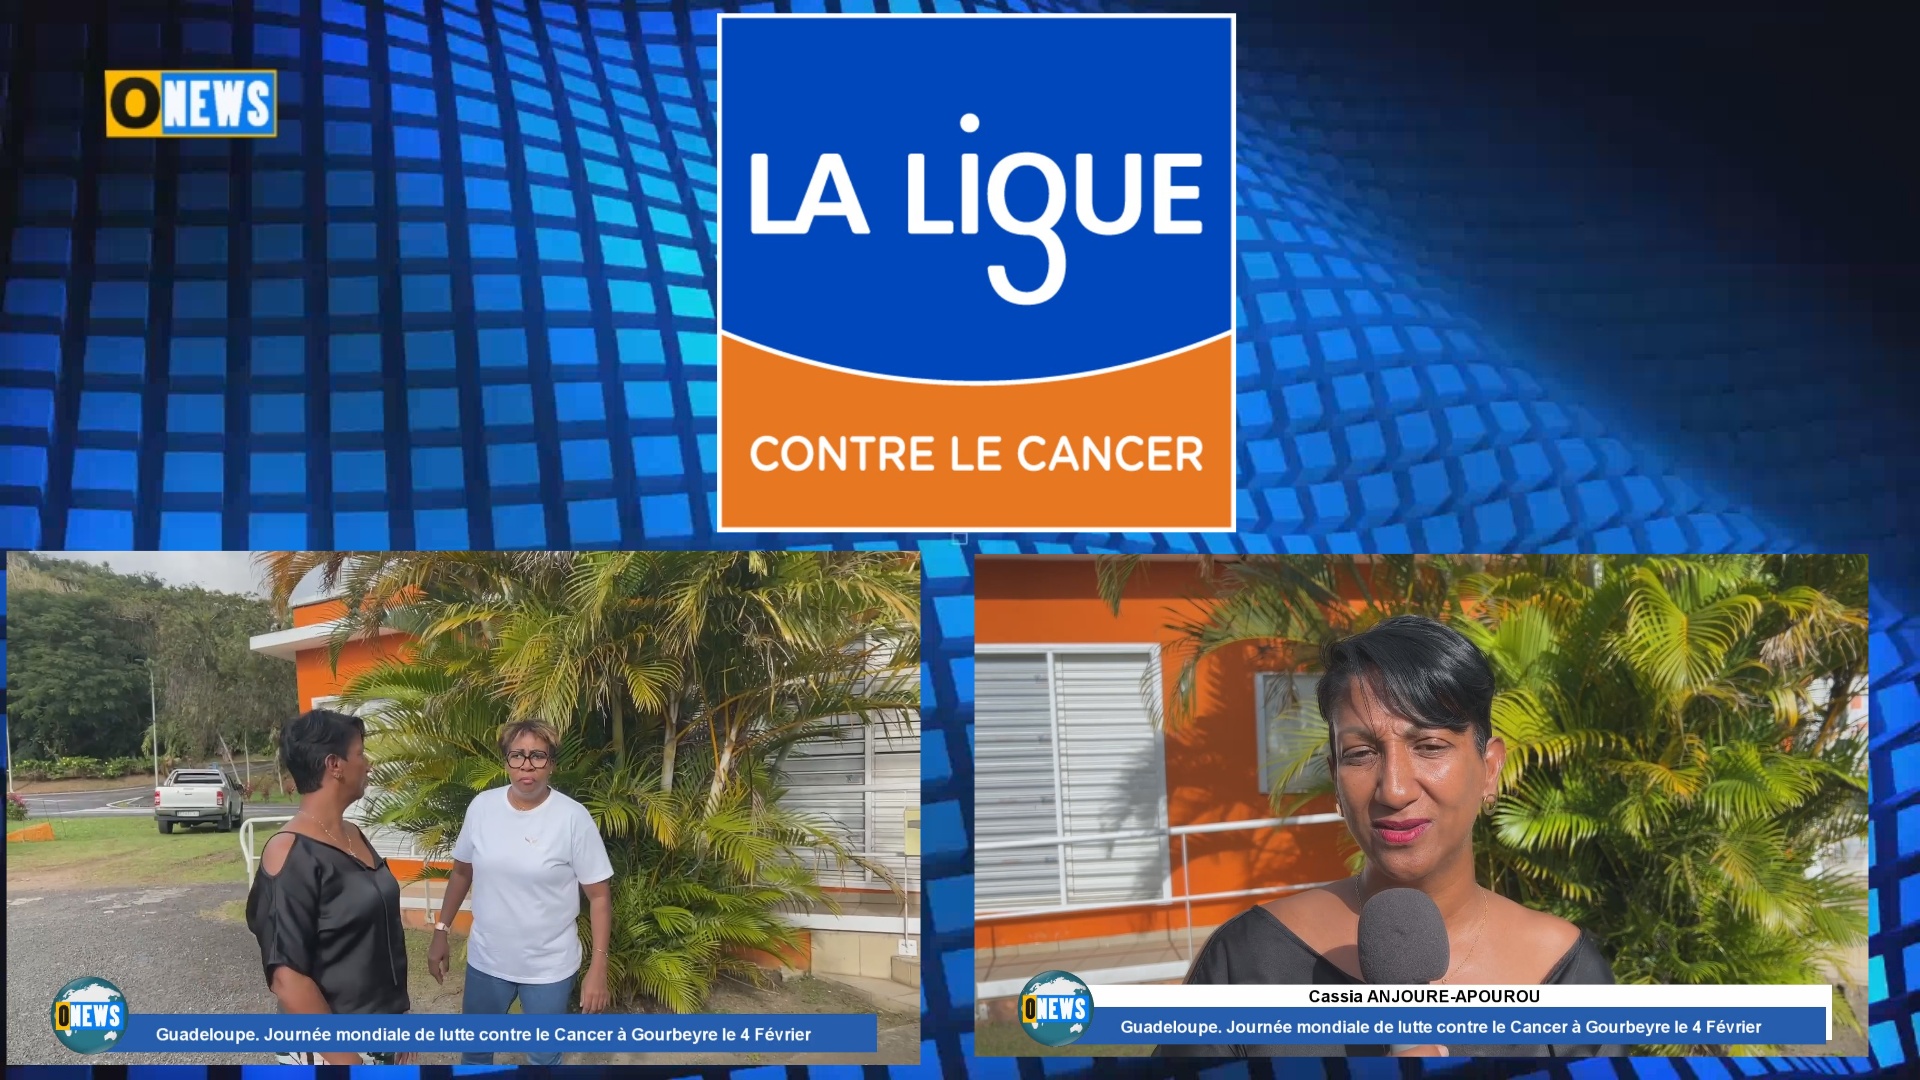 [Vidéo] Guadeloupe. Journée mondiale de lutte contre le Cancer à Gourbeyre le 4 Février